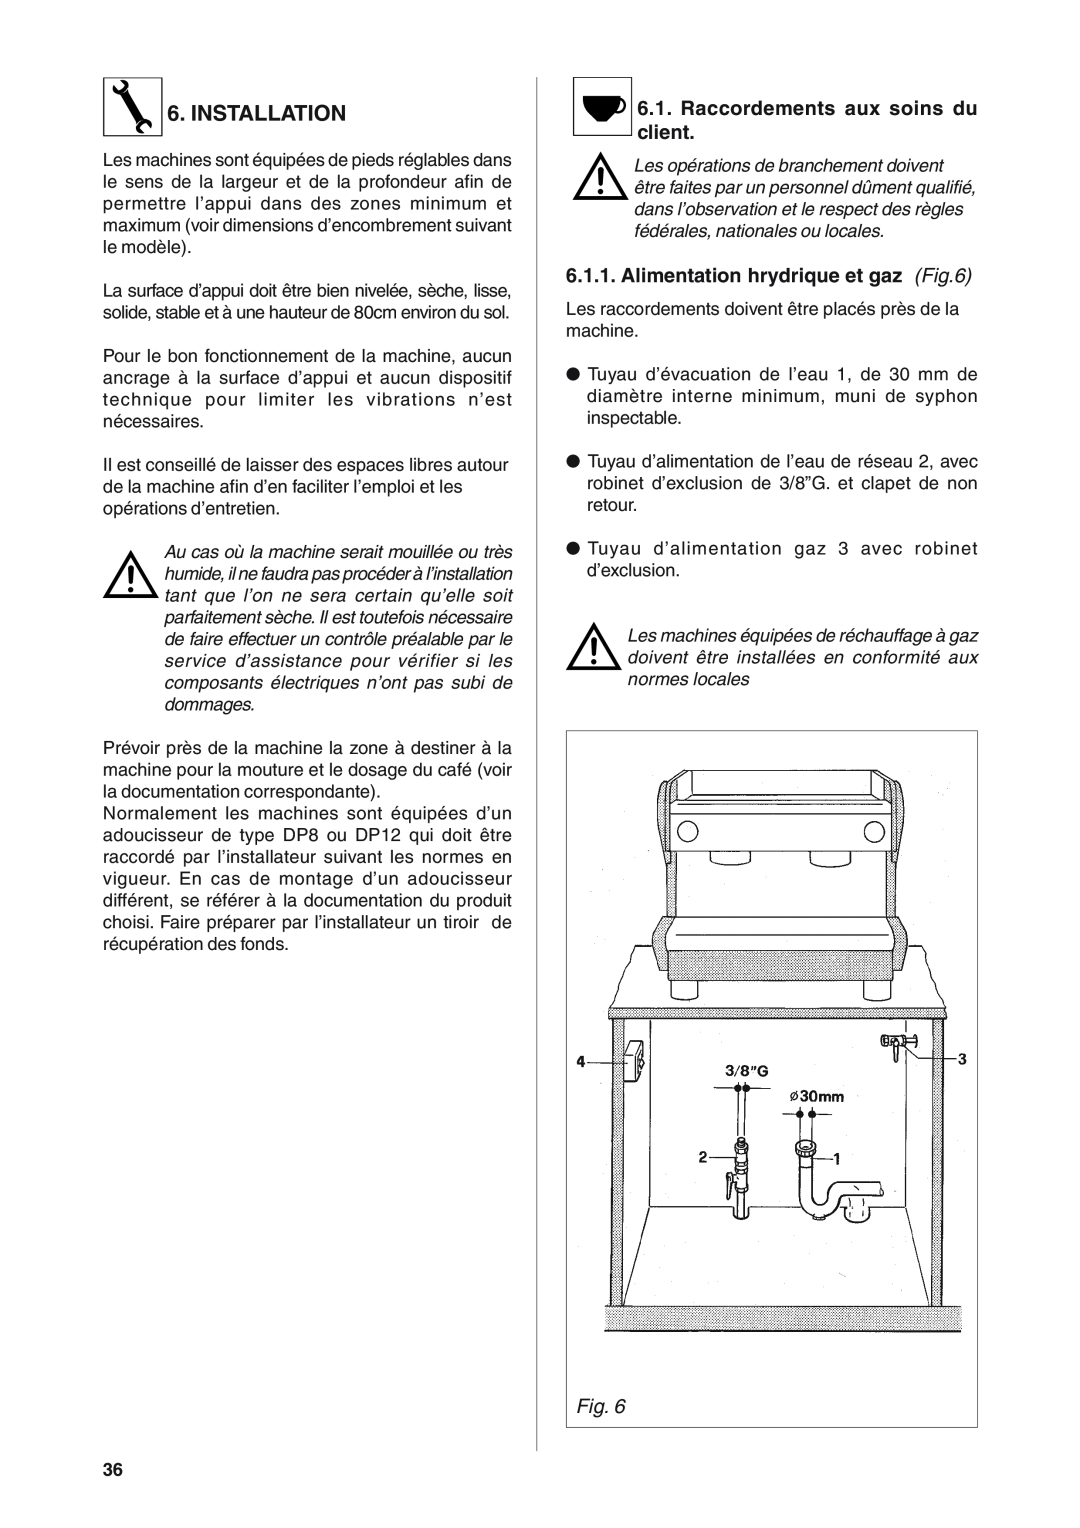 Rancilio S20 manual Installation, Raccordements aux soins du client, Alimentation hrydrique et gaz 